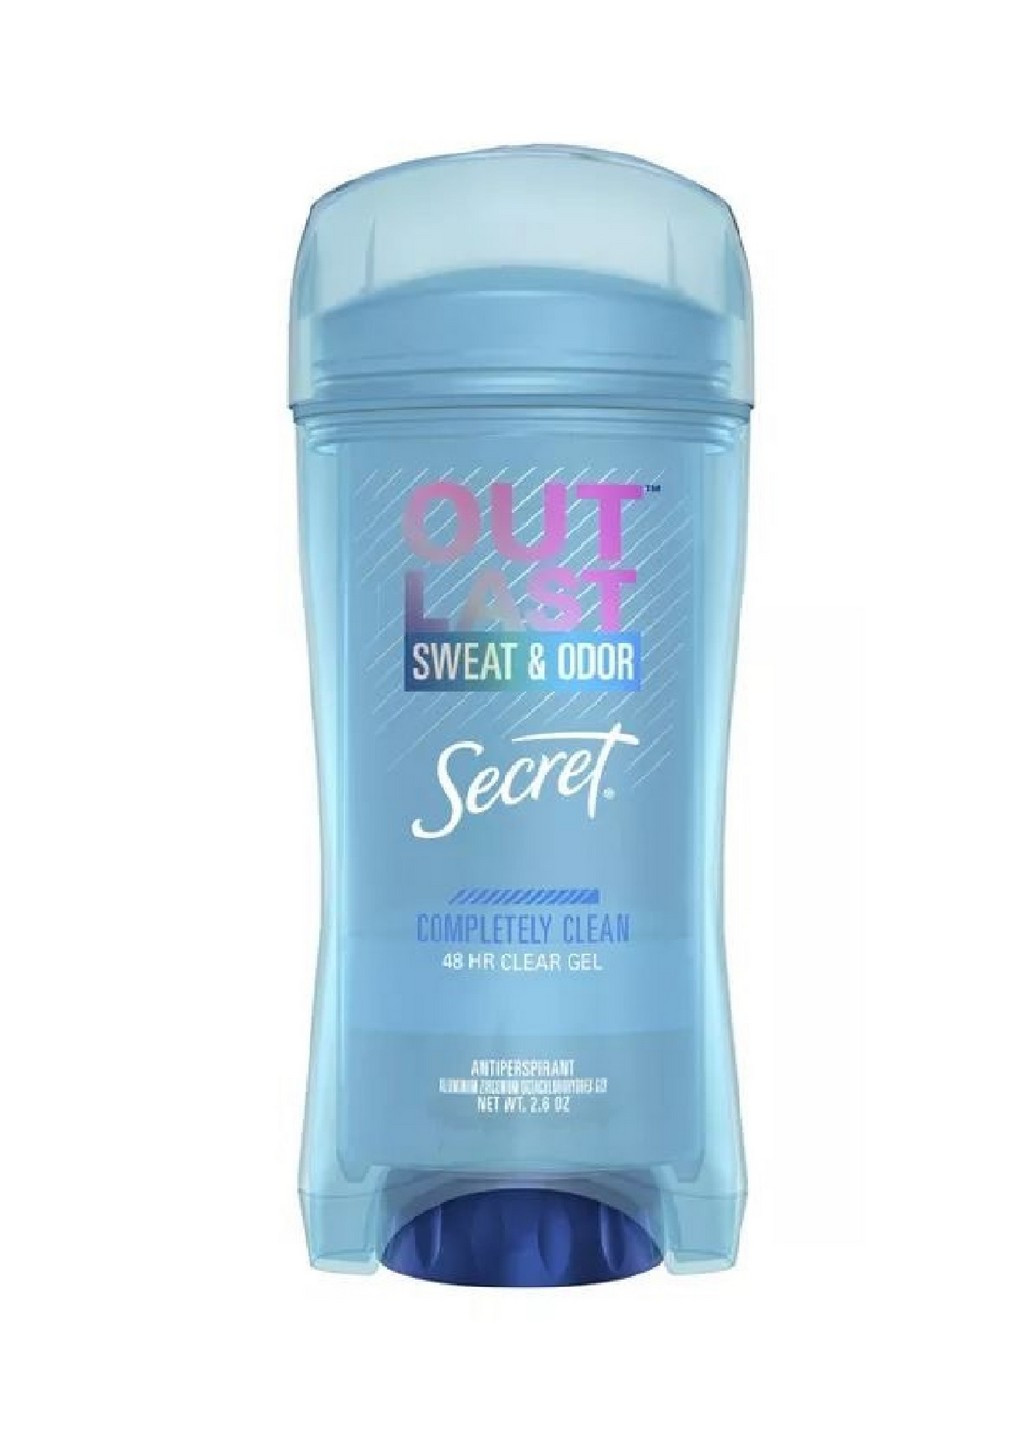 Гелевый дезодорант 48 Hour Clear гel Completely Clean 73 г Secret (275271891)